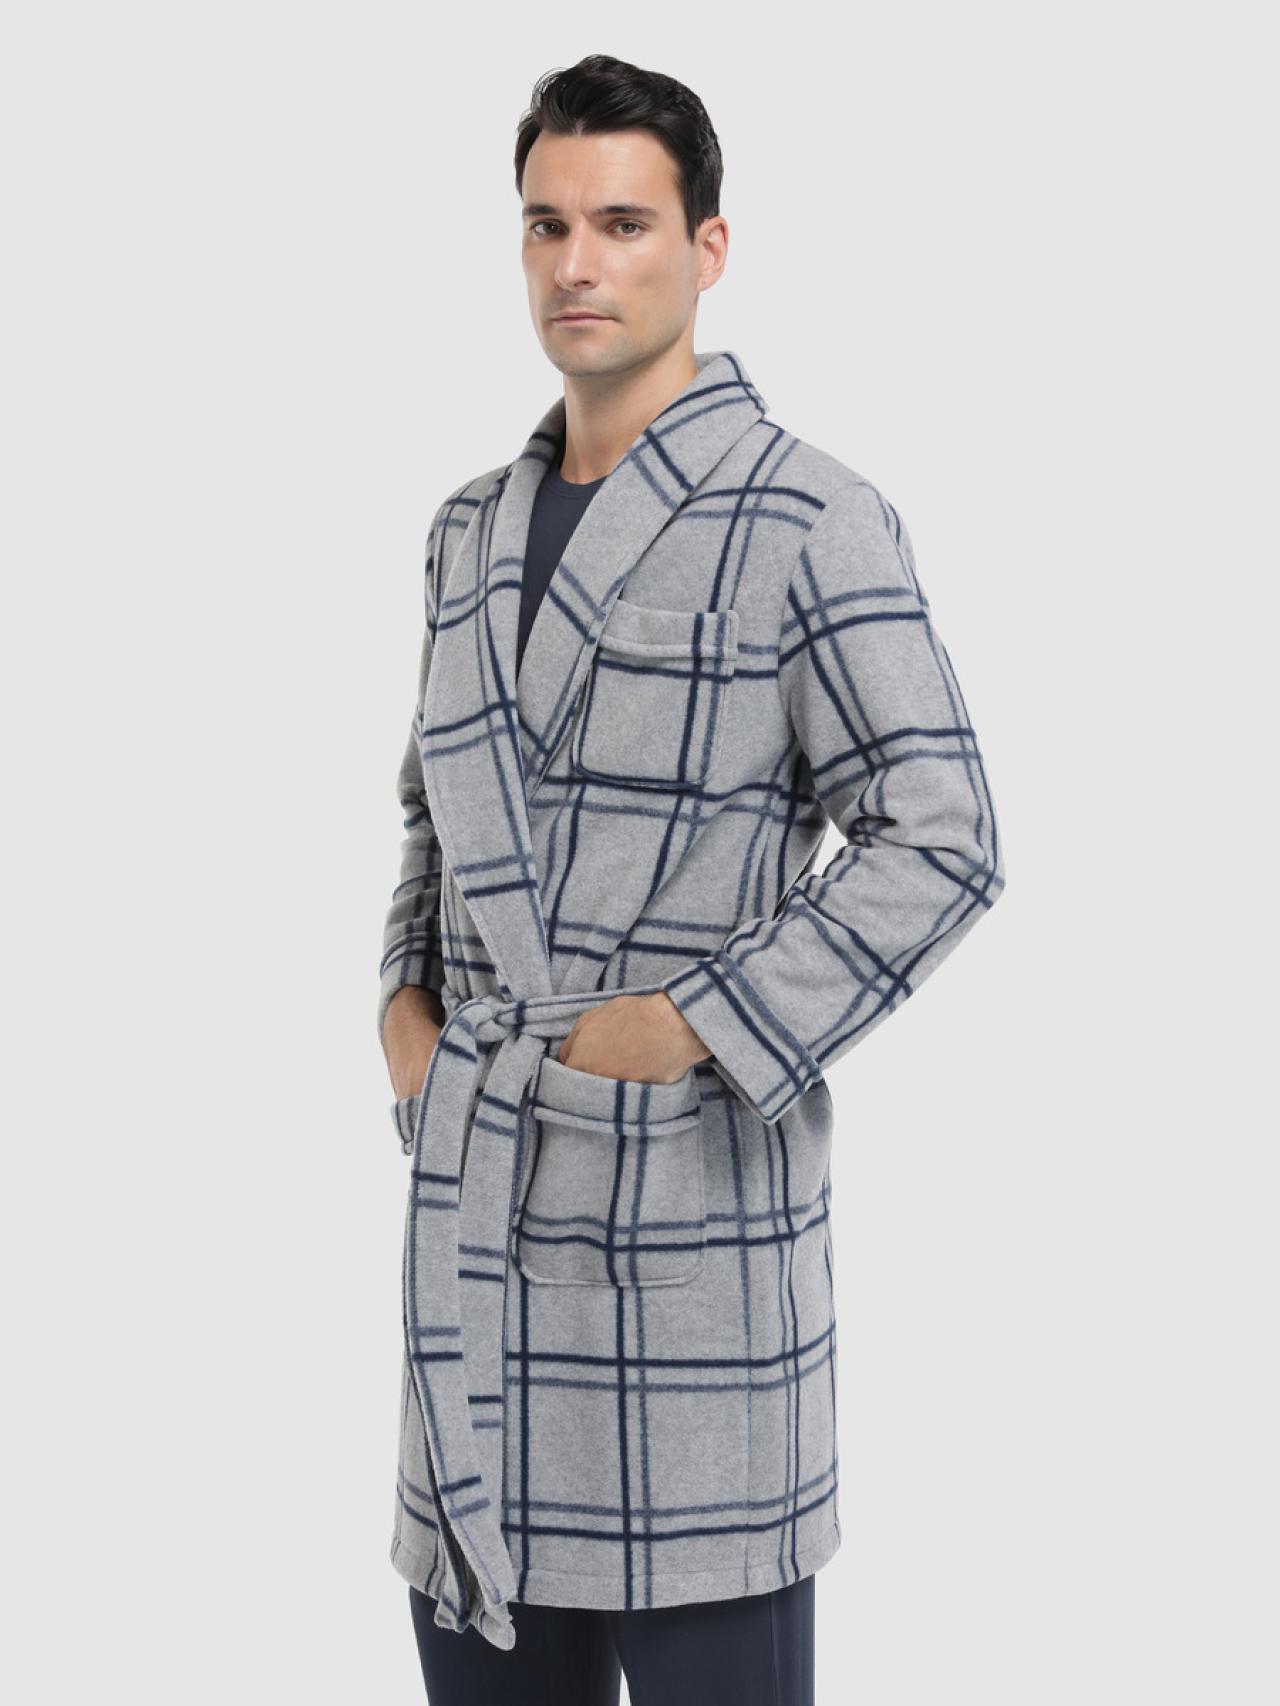 Estos son los 10 pijamas de hombre para a la moda en cama